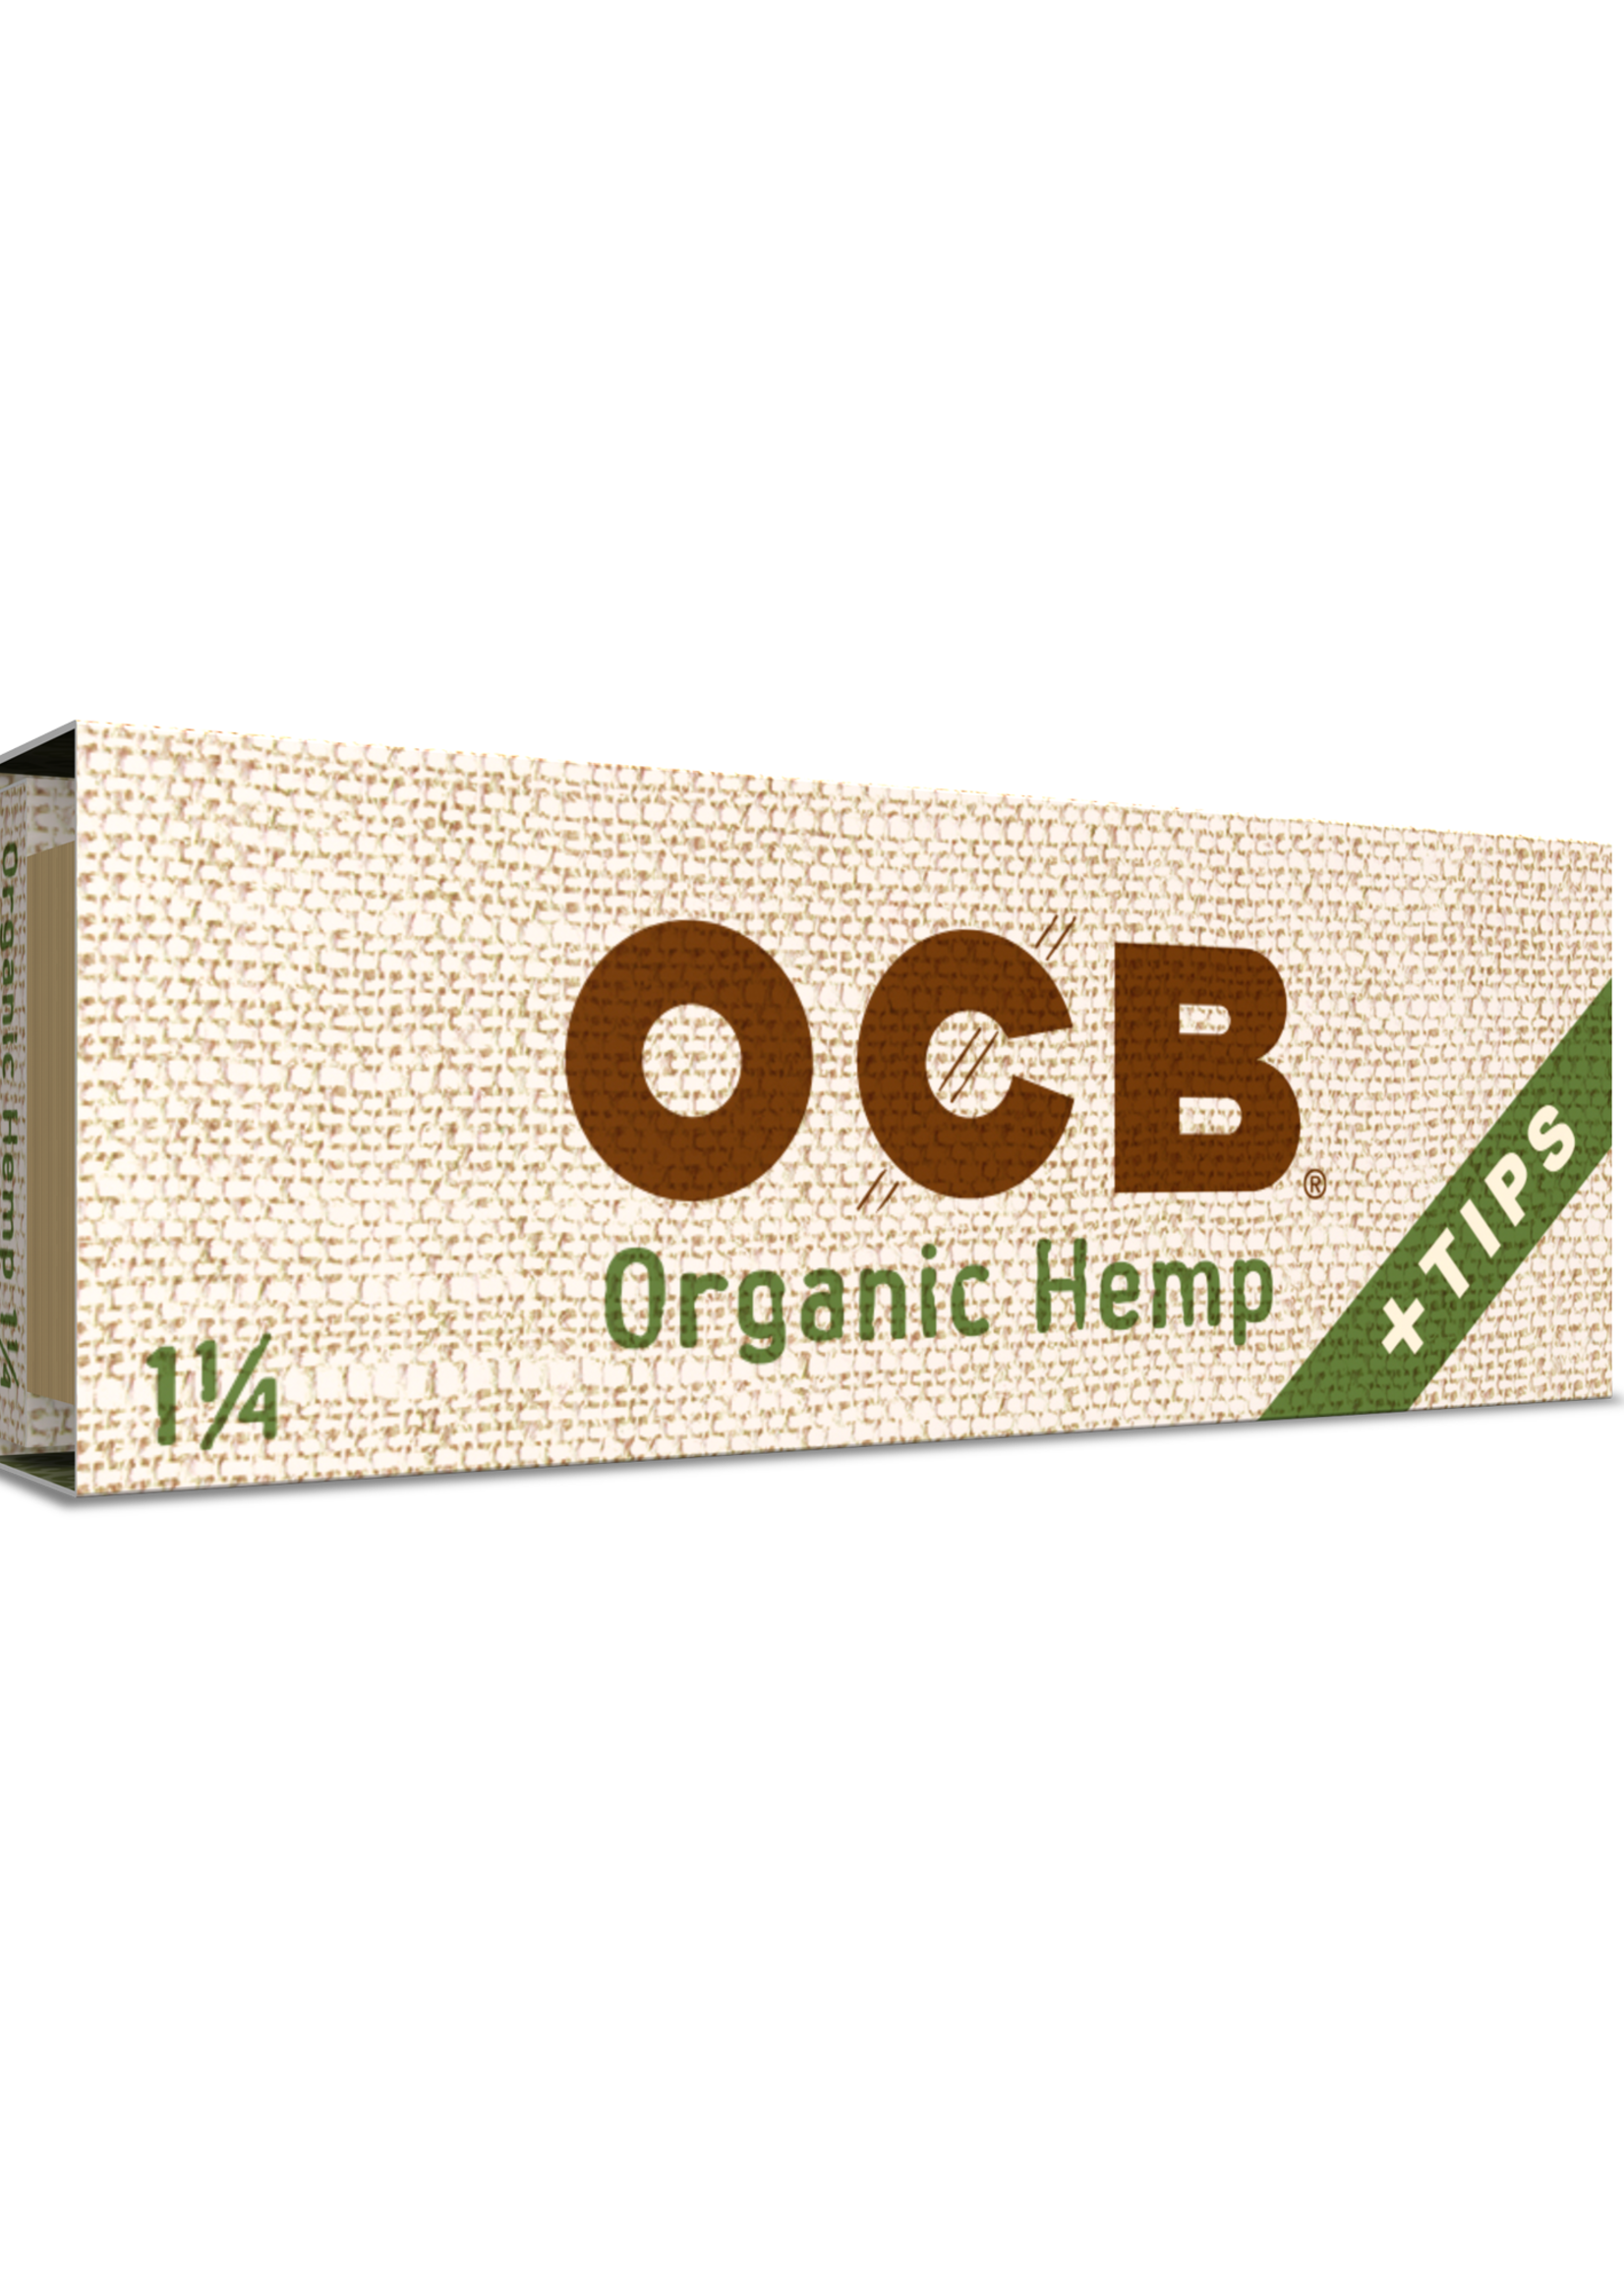 OCB OCB ORGANIC HEMP 1 1/4 + TIPS